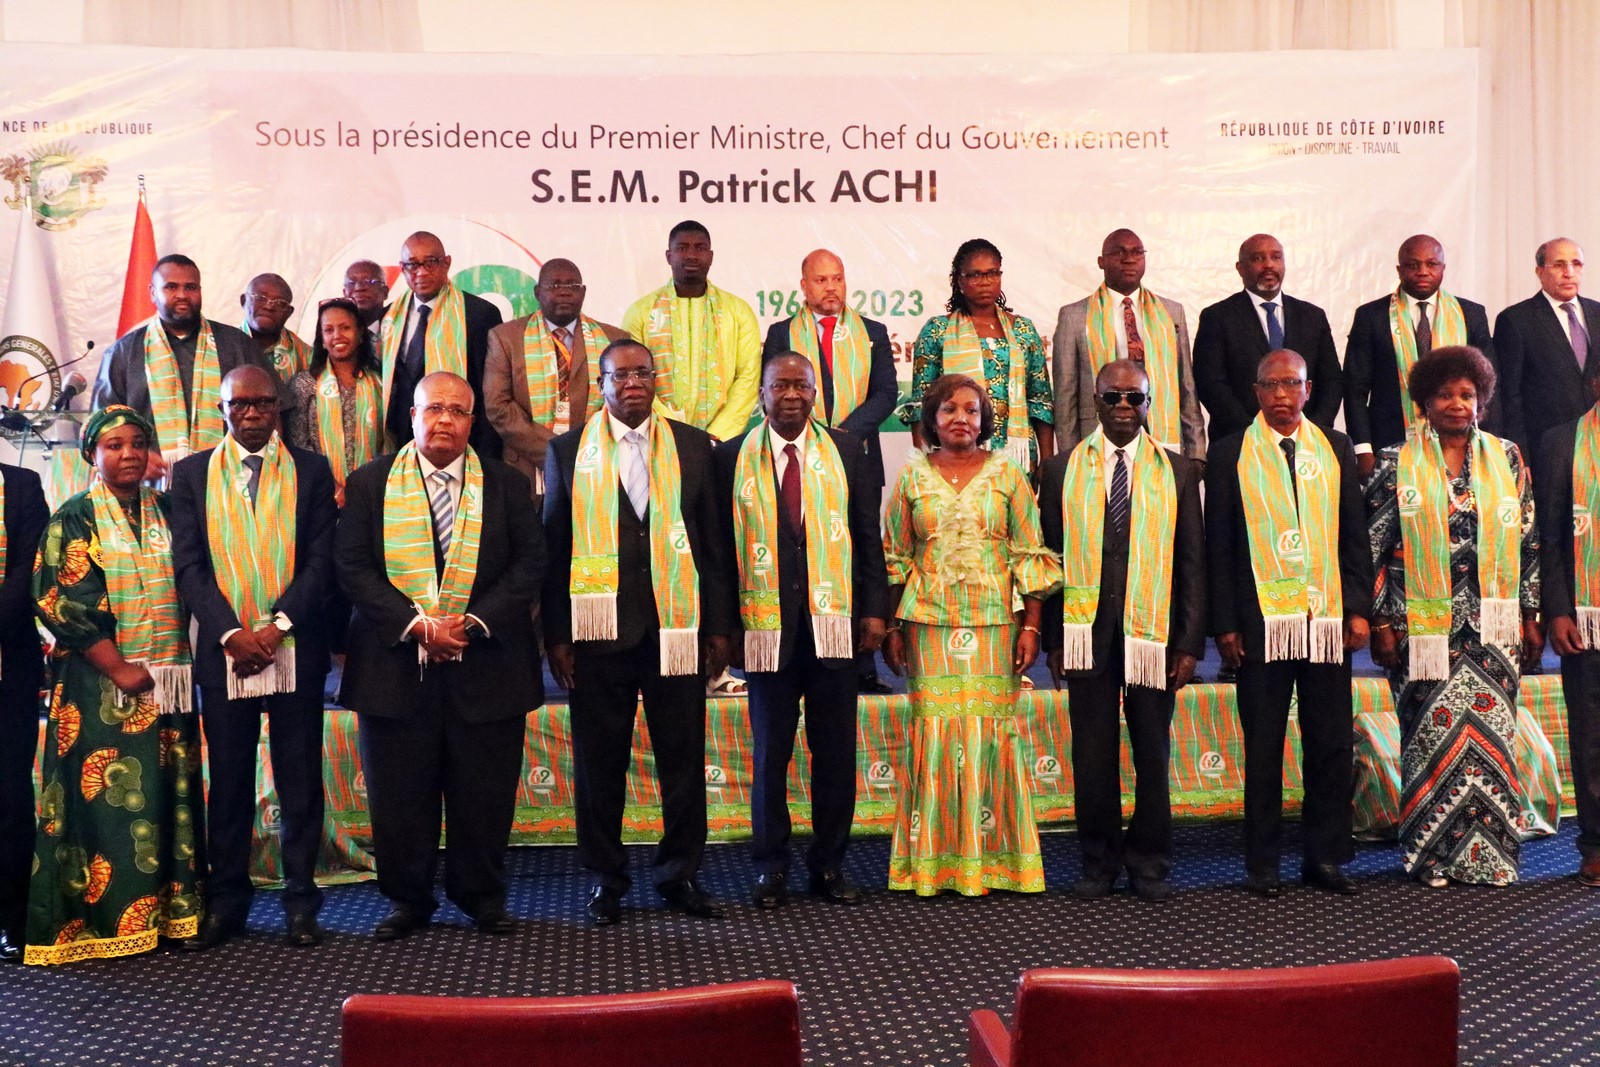 Commémoration des 62 ans de l'IGE: Cérémonie solennelle d'ouverture des activités, au Sofitel Hôtel Ivoire d'Abidjan en présence du Président du Sénat, Jeannot Kouadio-Ahoussou.